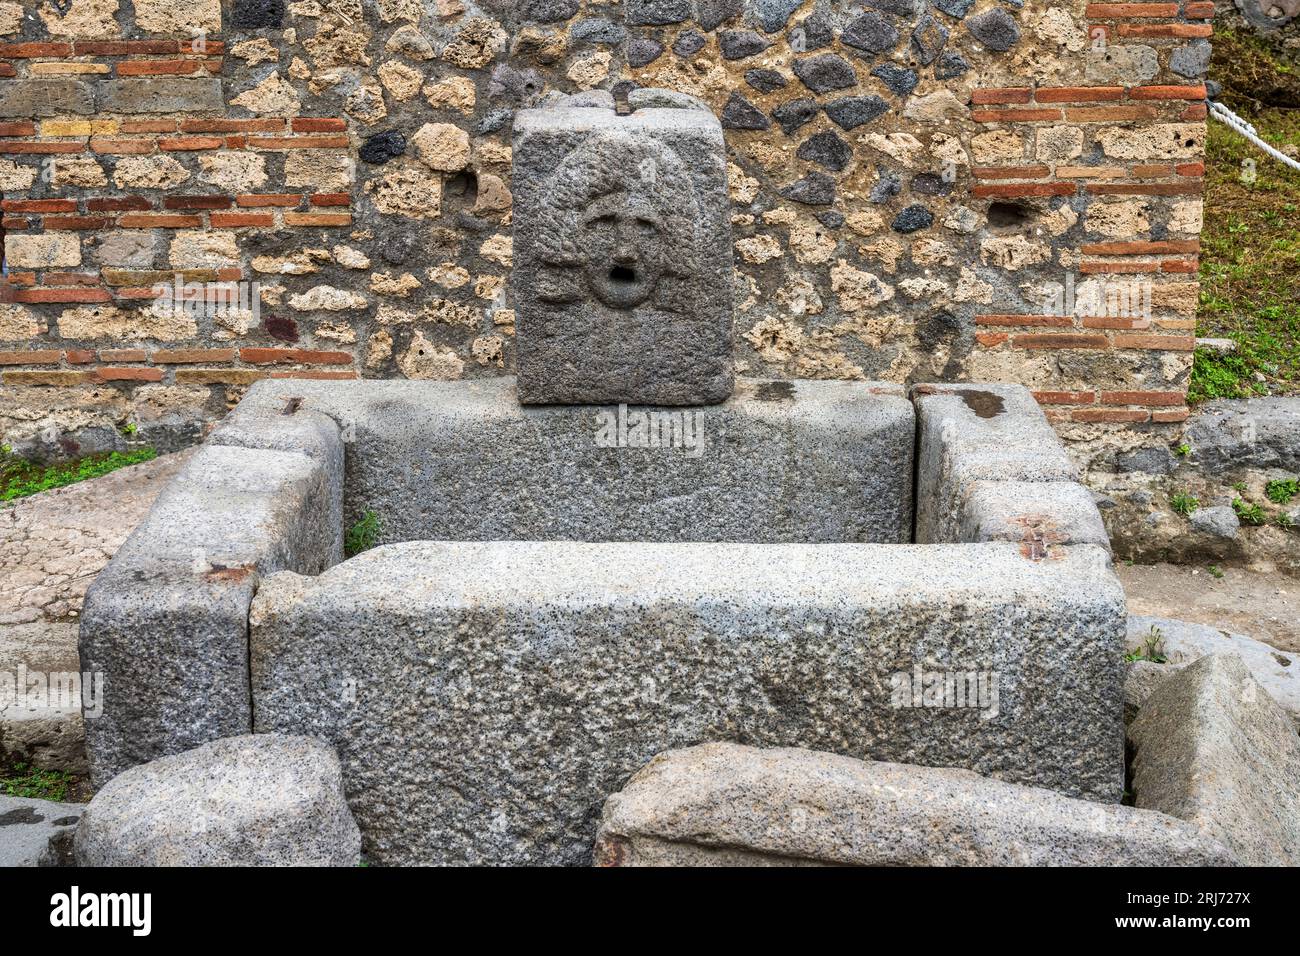 Fontaine publique sur la via dell’Abbondanza dans les ruines de l’ancienne ville de Pompéi dans la région Campanie du sud de l’Italie Banque D'Images